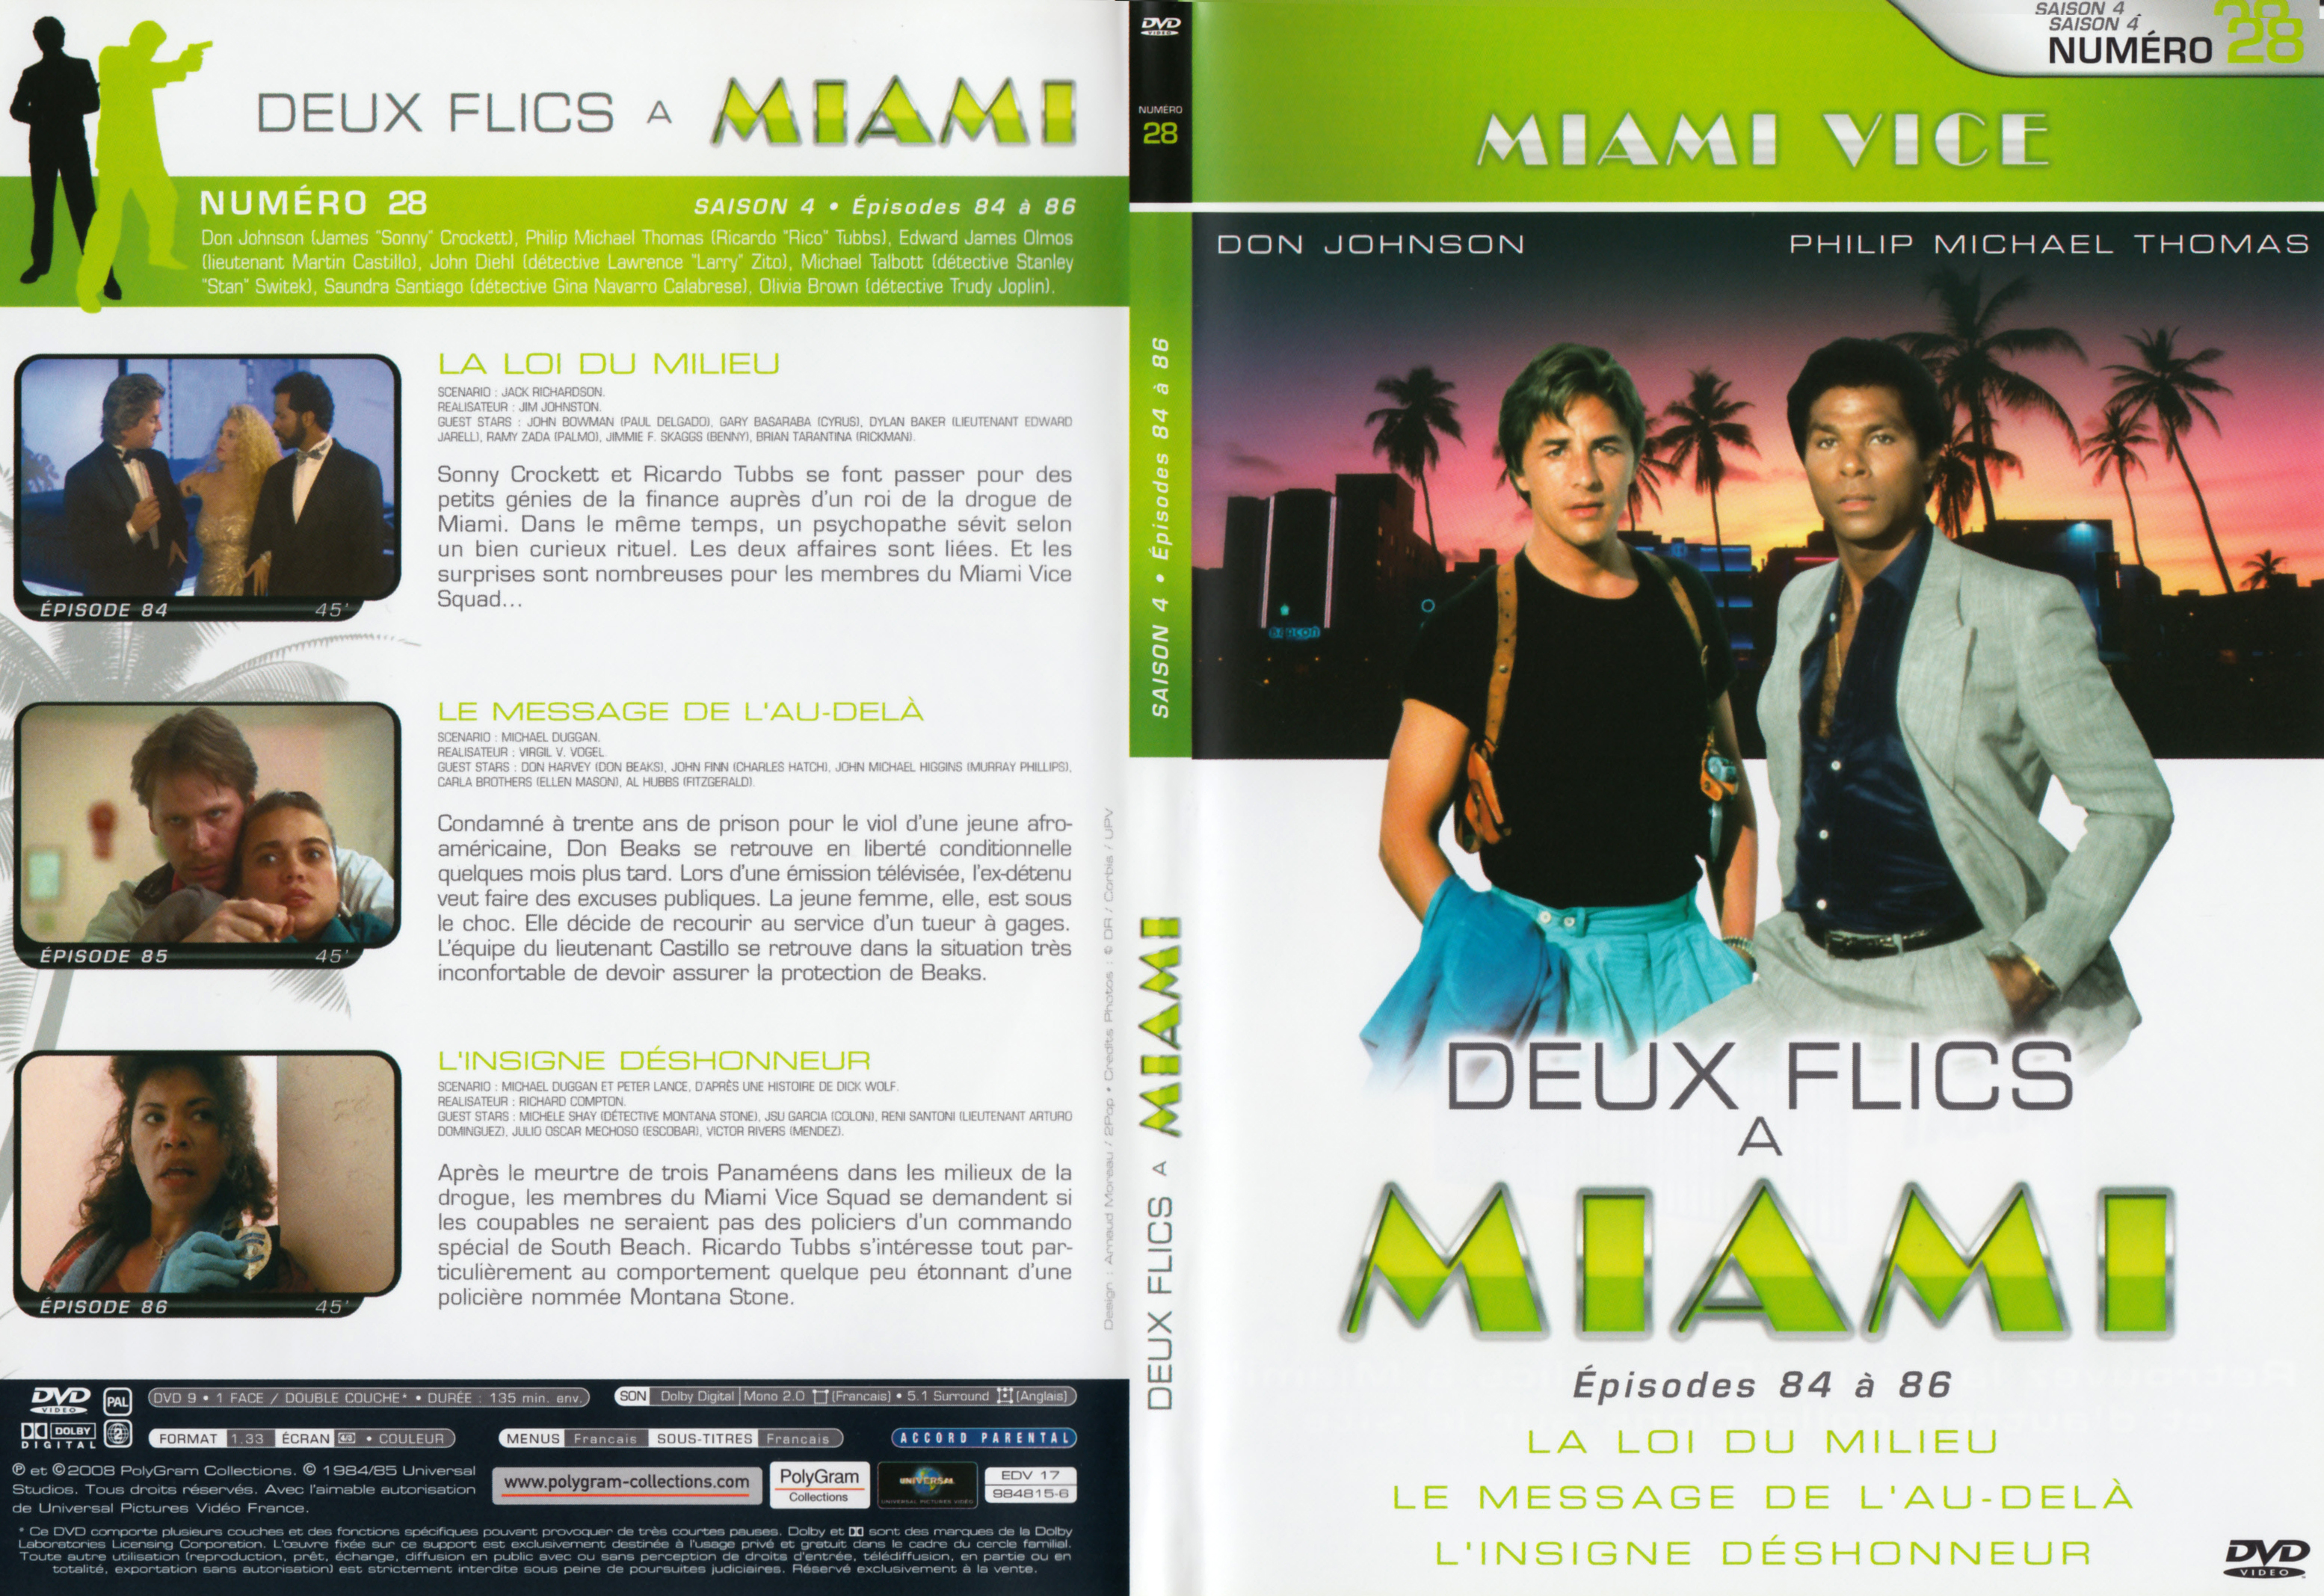 Jaquette DVD Deux flics  Miami Saison 4 vol 28